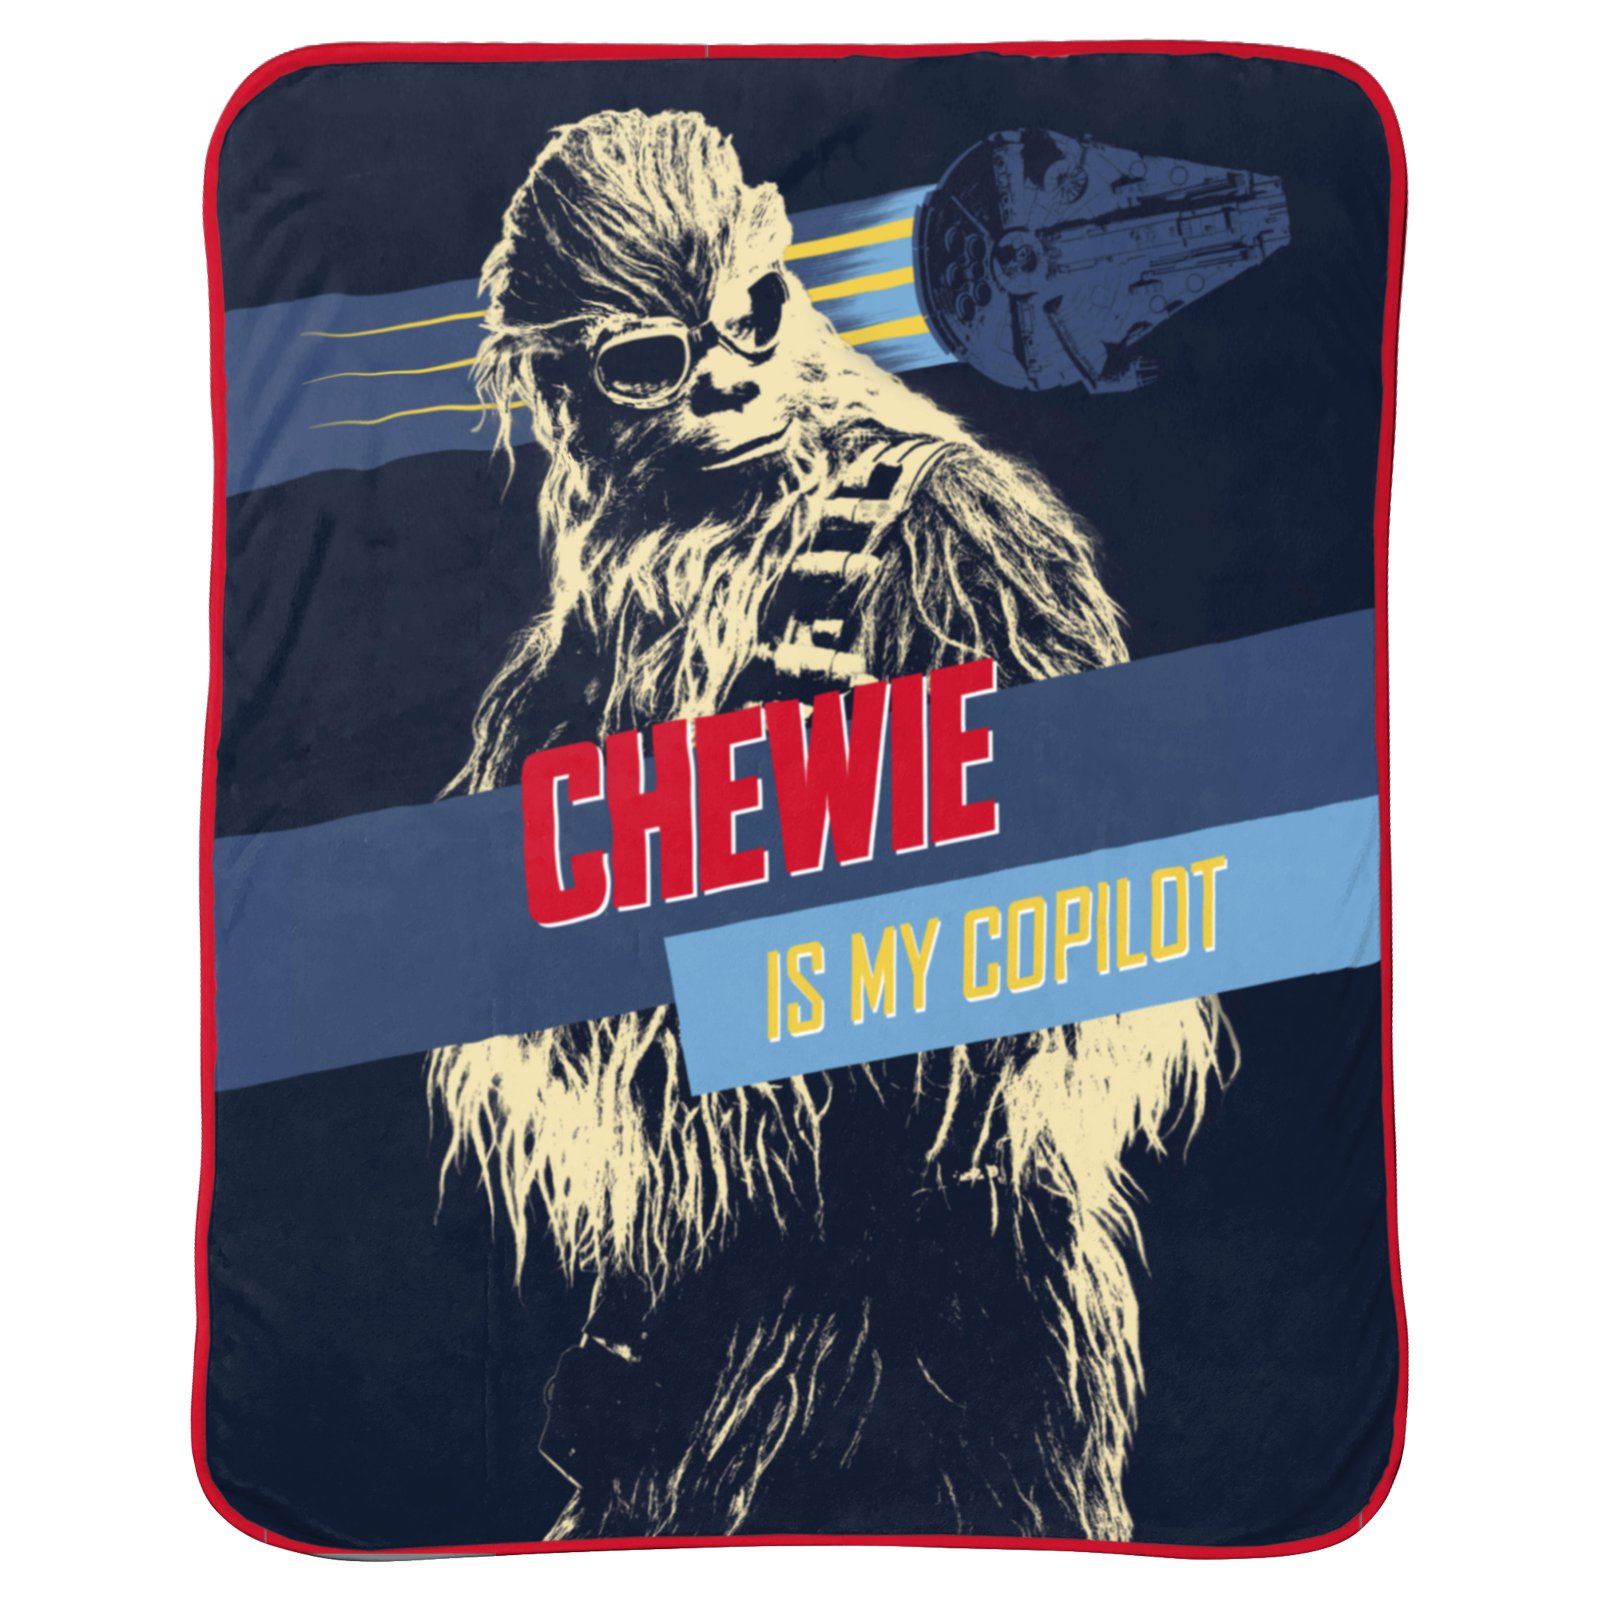 Solo: ASWS "Chewie is My Copilot" Throw Blanket